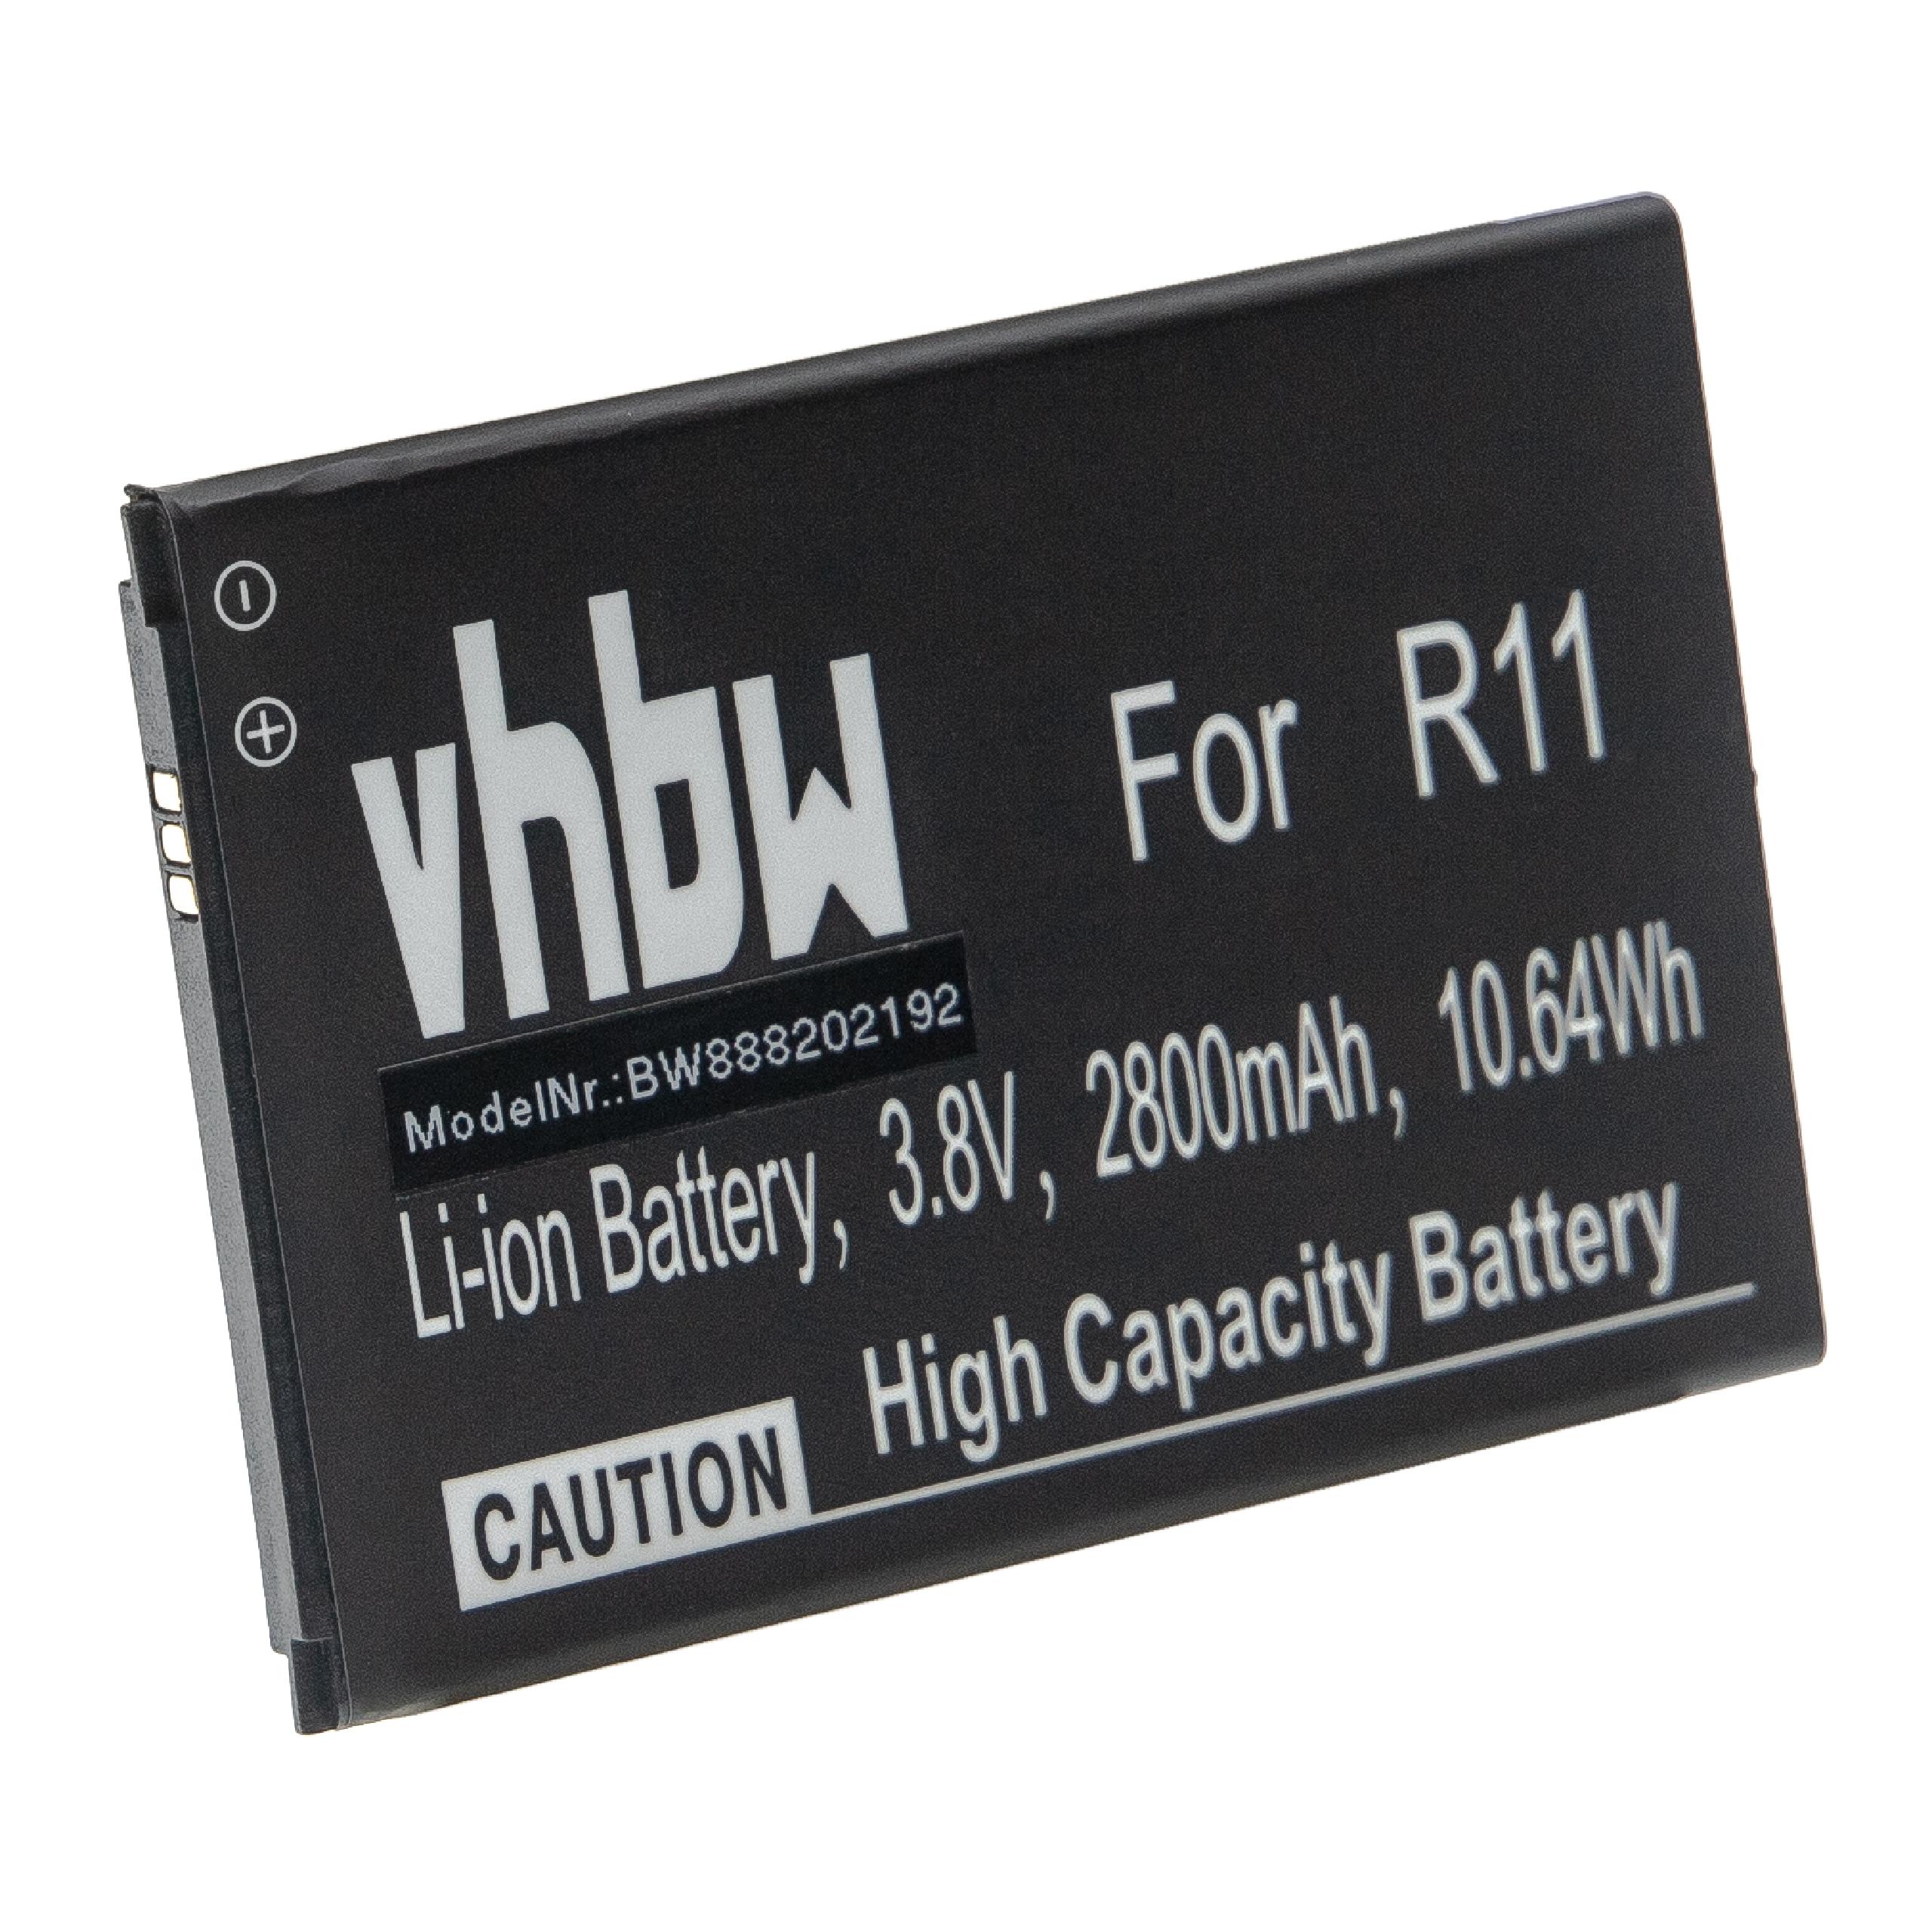 Mobile Phone Battery for Cubot R11, R11+ - 2800mAh 4.2V Li-Ion